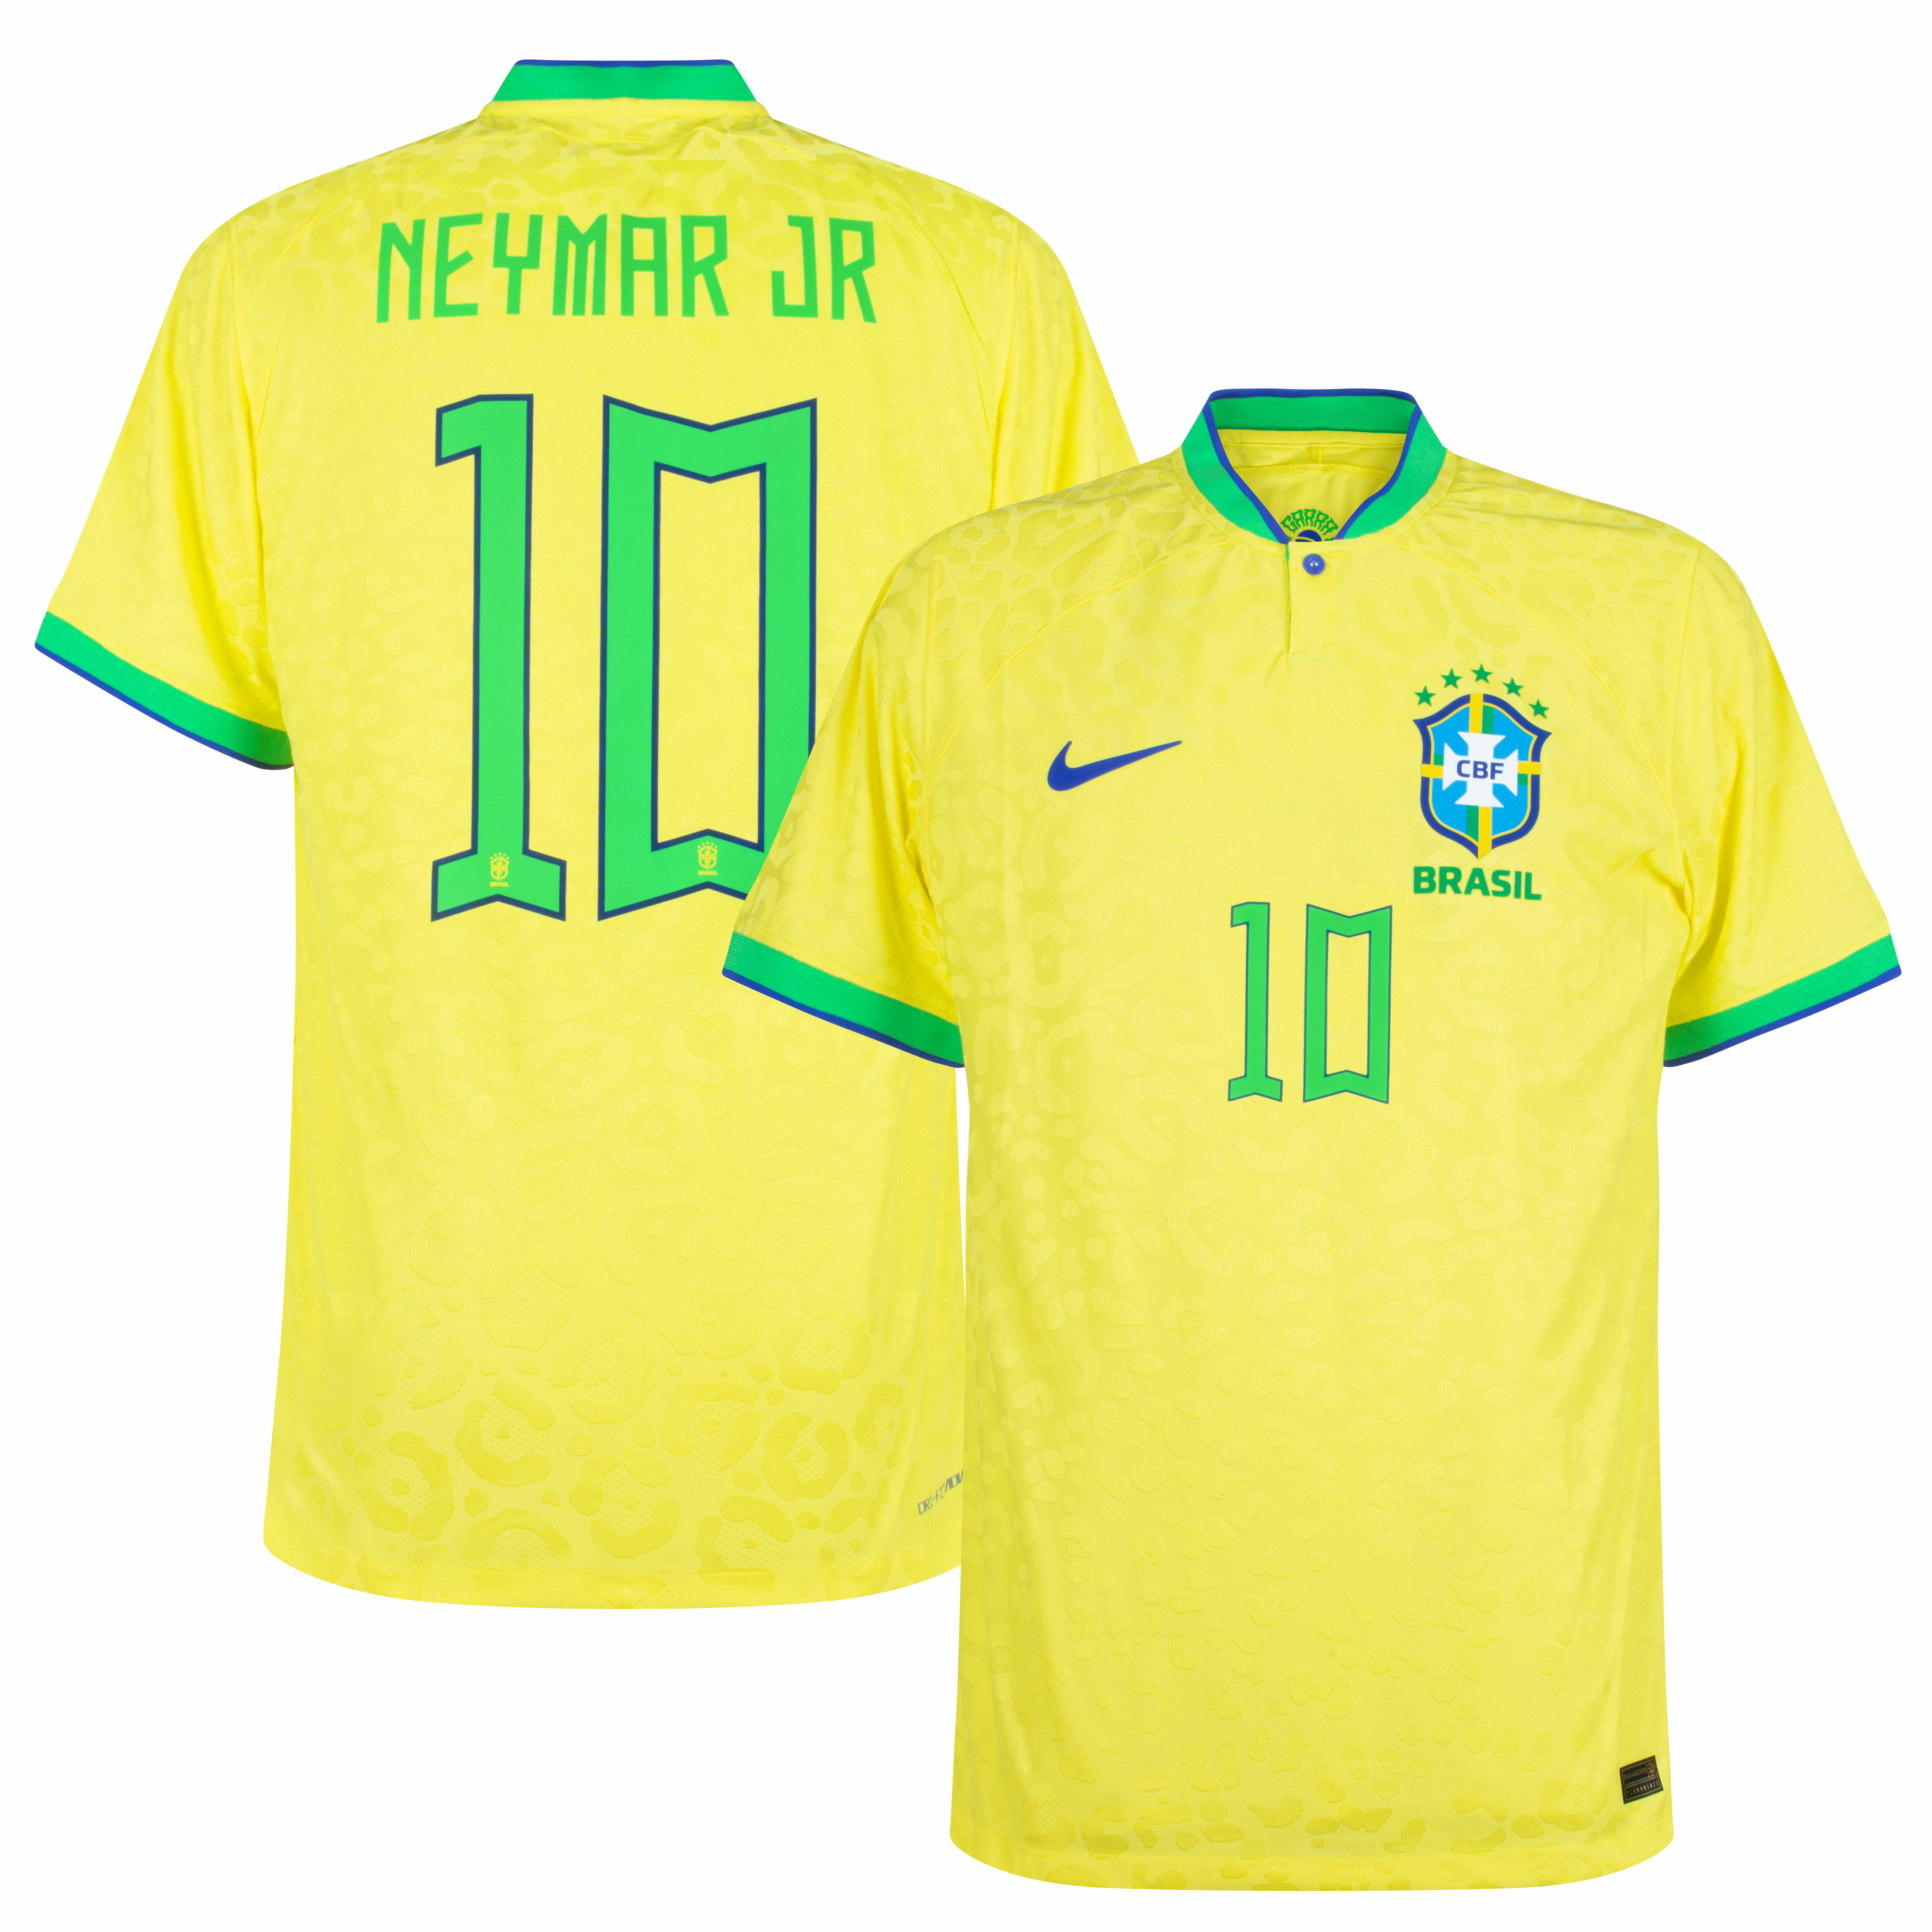 Brazílie - Dres fotbalový "Match" - oficiální potisk, žlutý, číslo 10, domácí, sezóna 2022/23, Neymar, Dri-FIT ADV